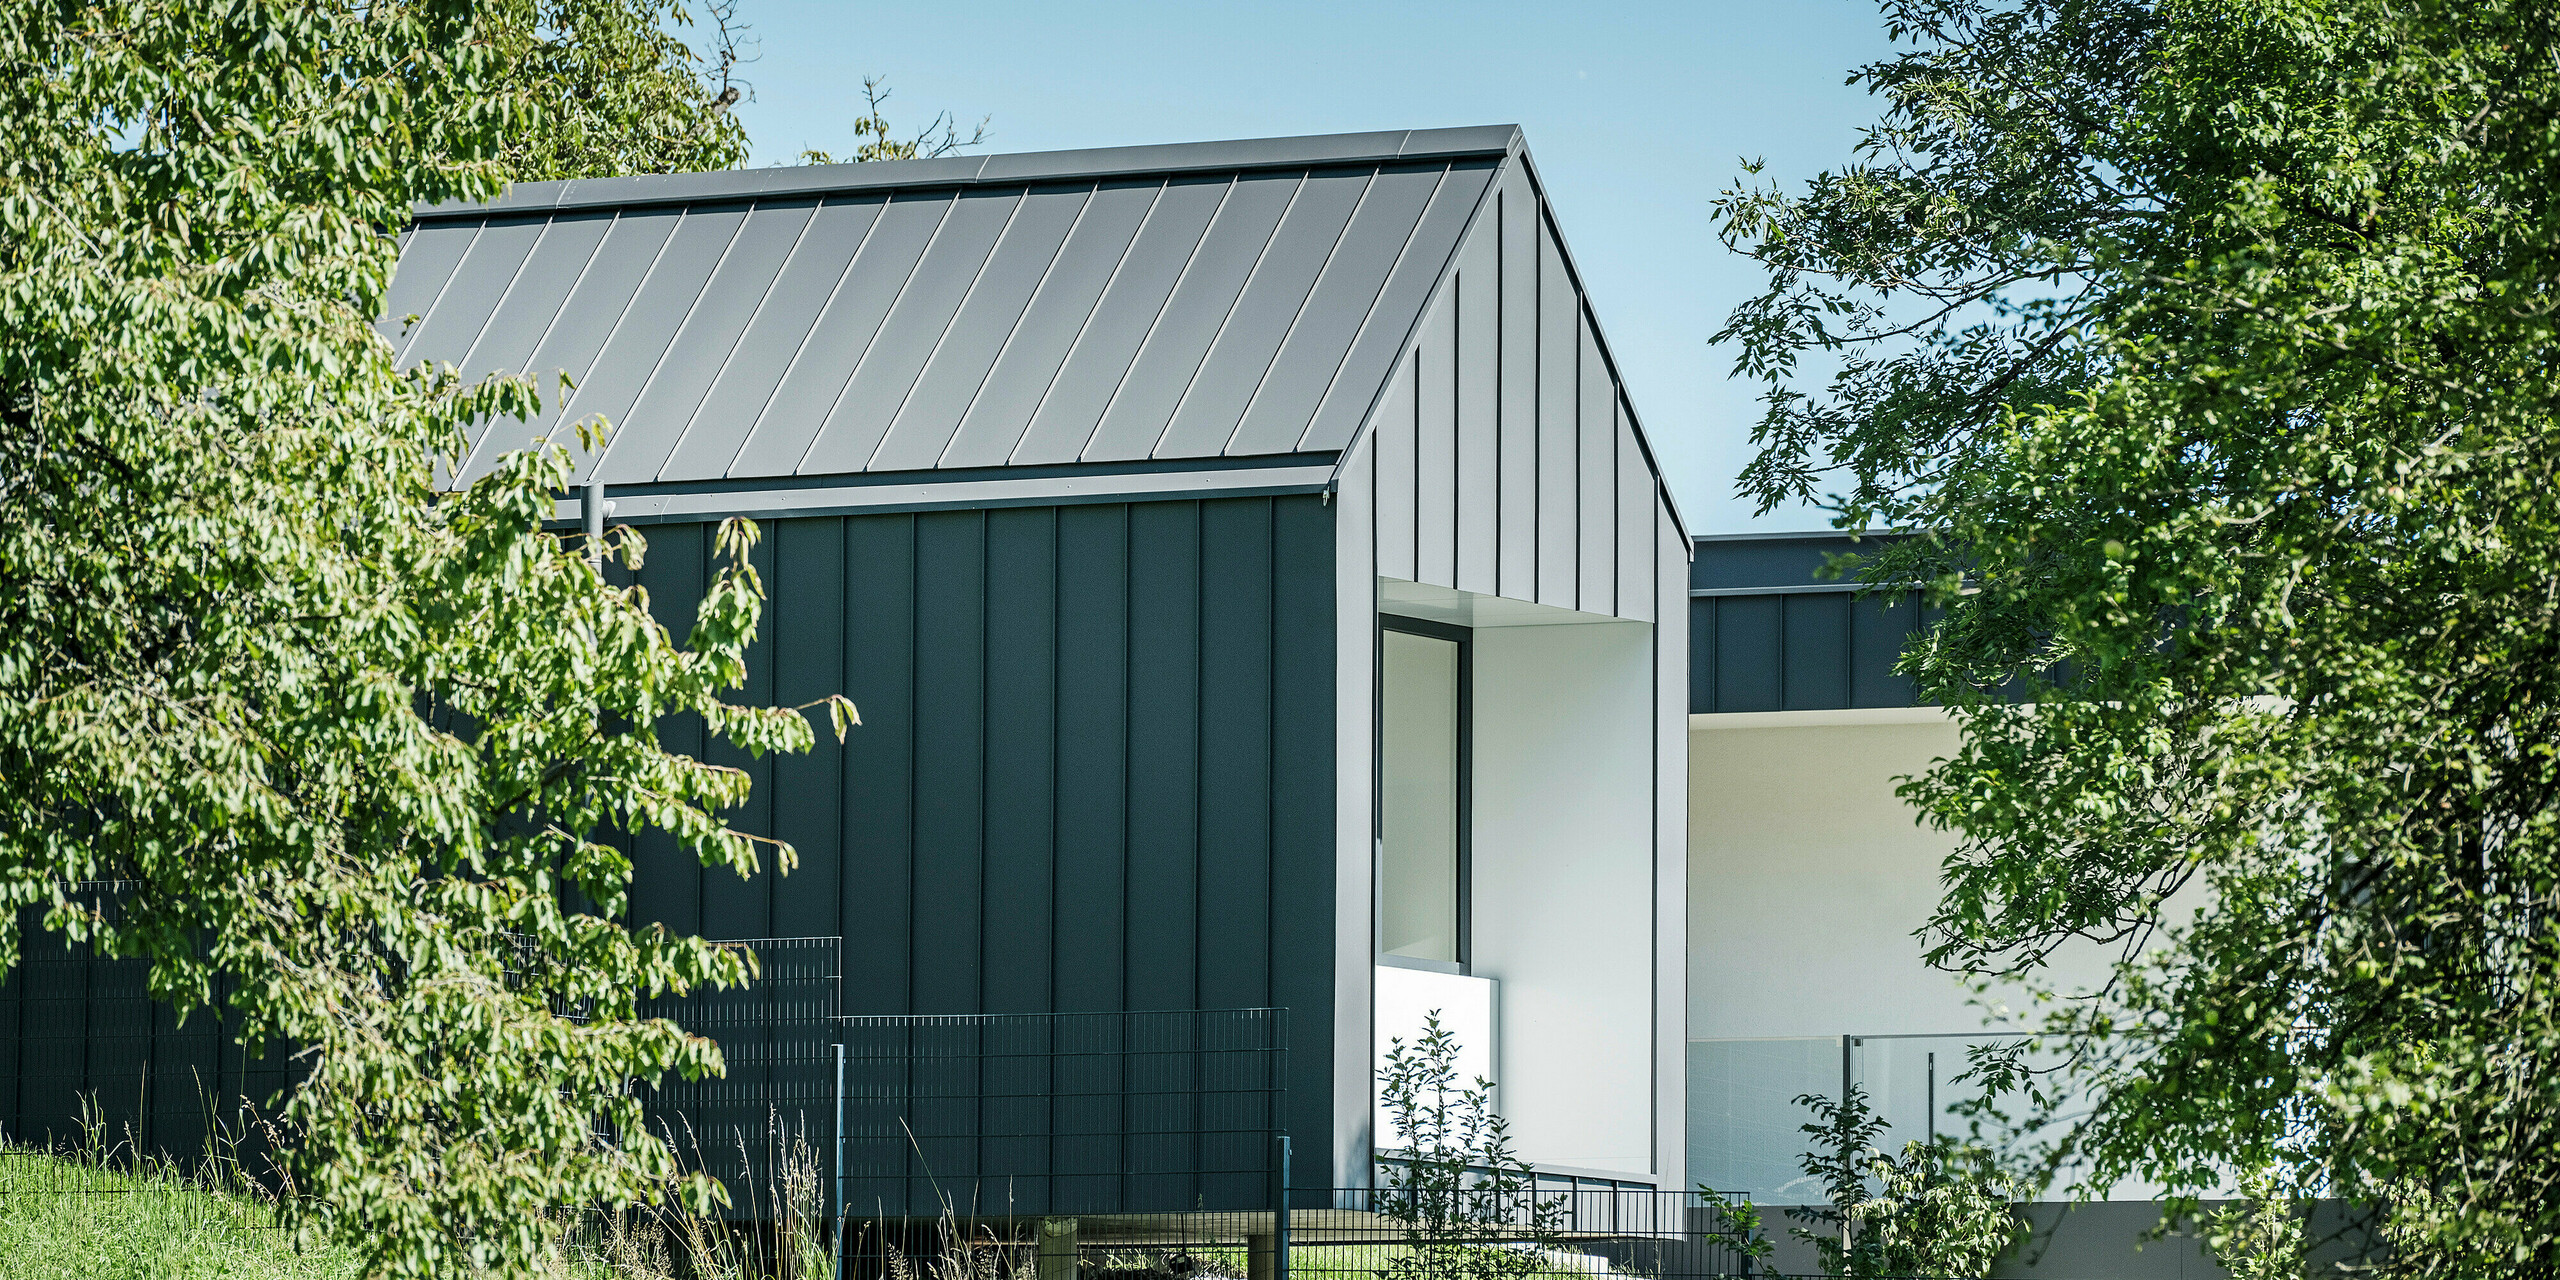 Pohled skrz svěží zeleň rodinného domu v rakouském Pogier, vybaveného střechou a fasádou od PREFA v produktu PREFALZ v P.10 tmavě šedá. Jasné linie a tmavé barvy hliníkových prvků tvoří elegantní kontrast se světlou omítnutou fasádou v krytých prostorách a přírodním prostředí. Lodžie nabízí chráněný venkovní prostor, který zdůrazňuje propojení vnitřního a venkovního prostoru a zajišťuje příjemnou atmosféru bydlení.